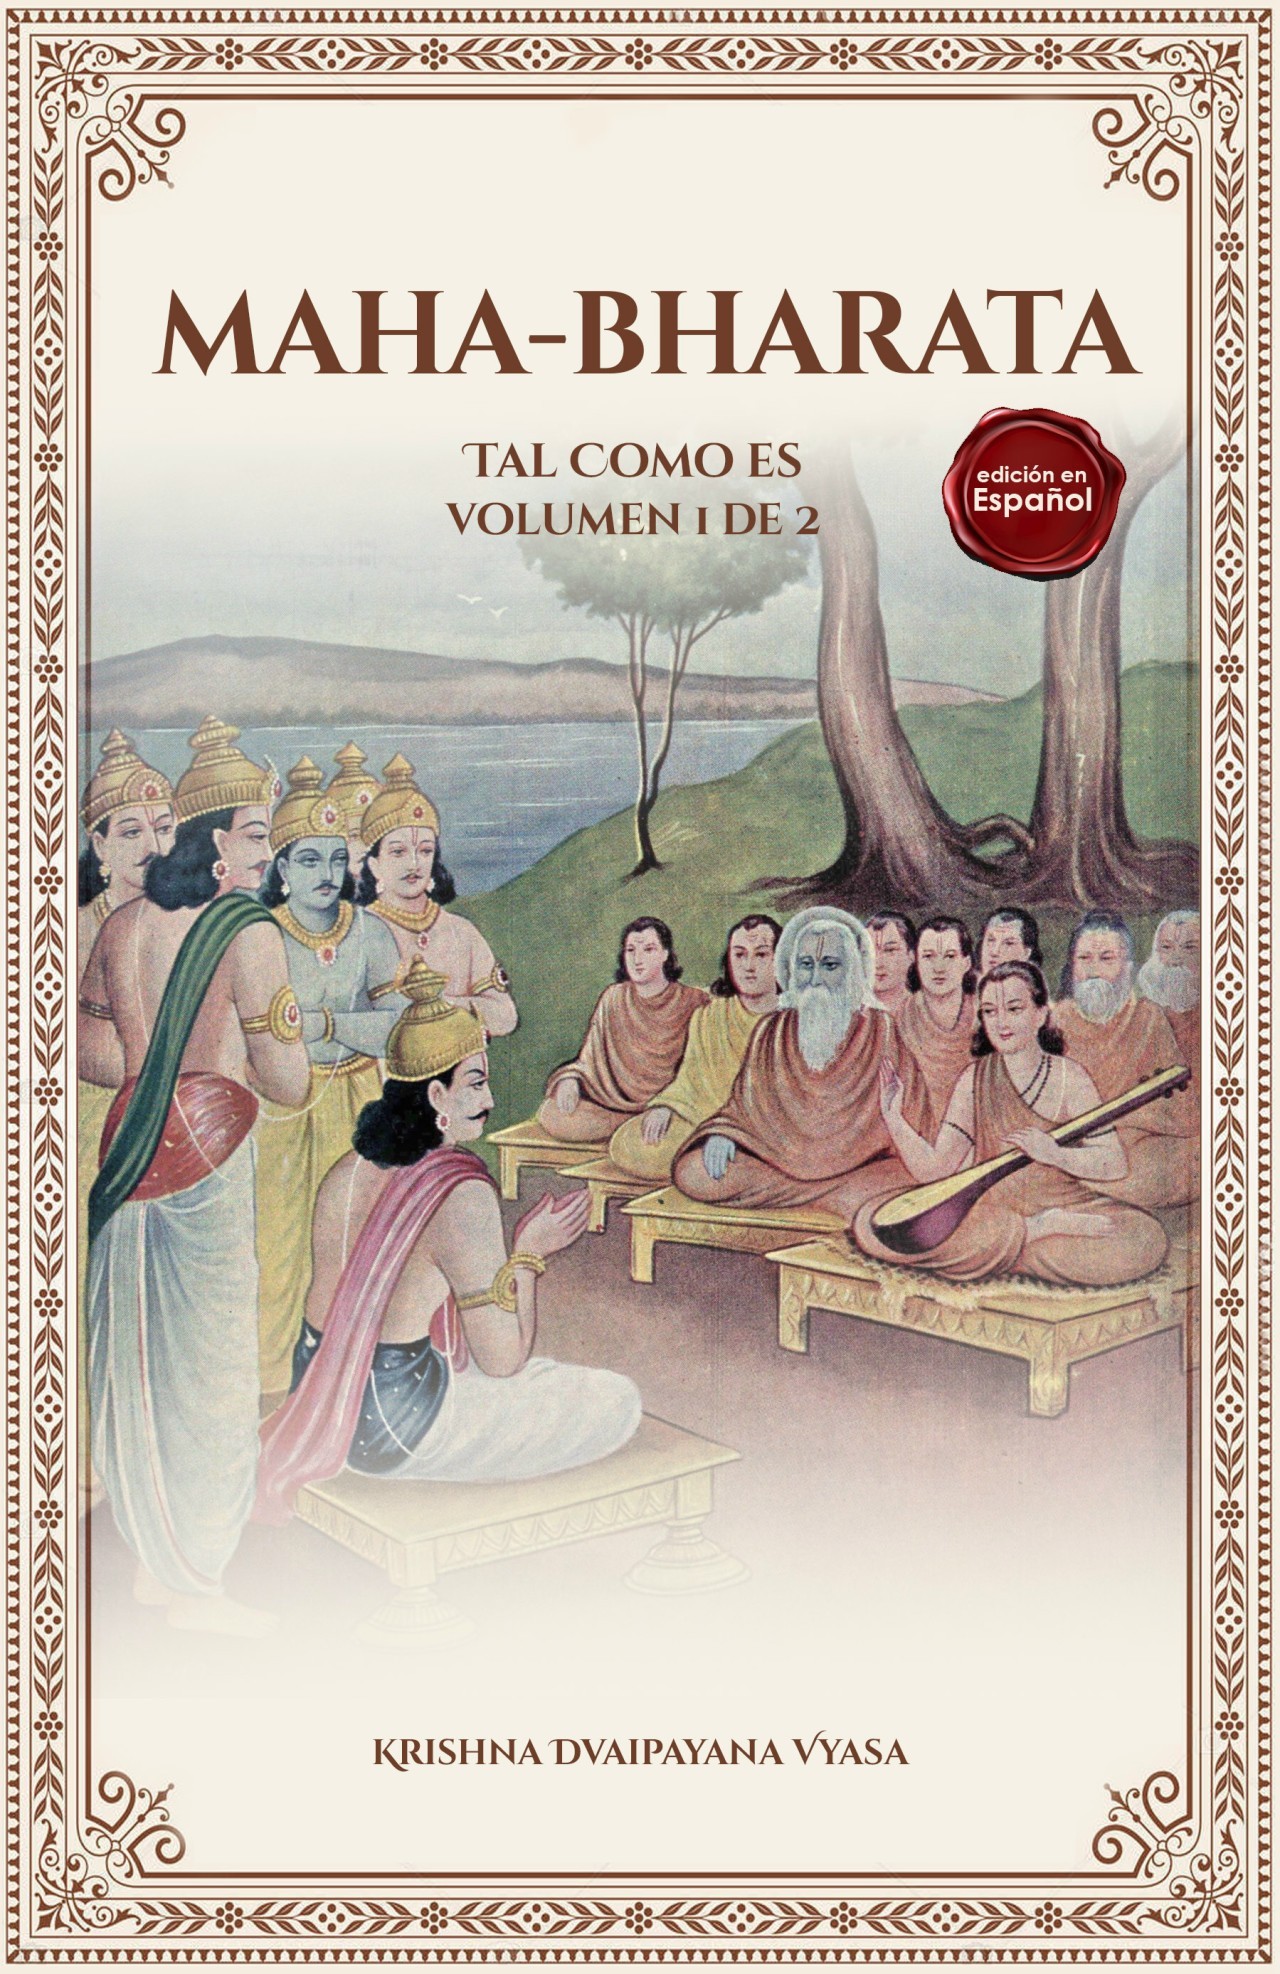 Mahabharata (Asi Como Es) en Espanol - en dos volúmenes